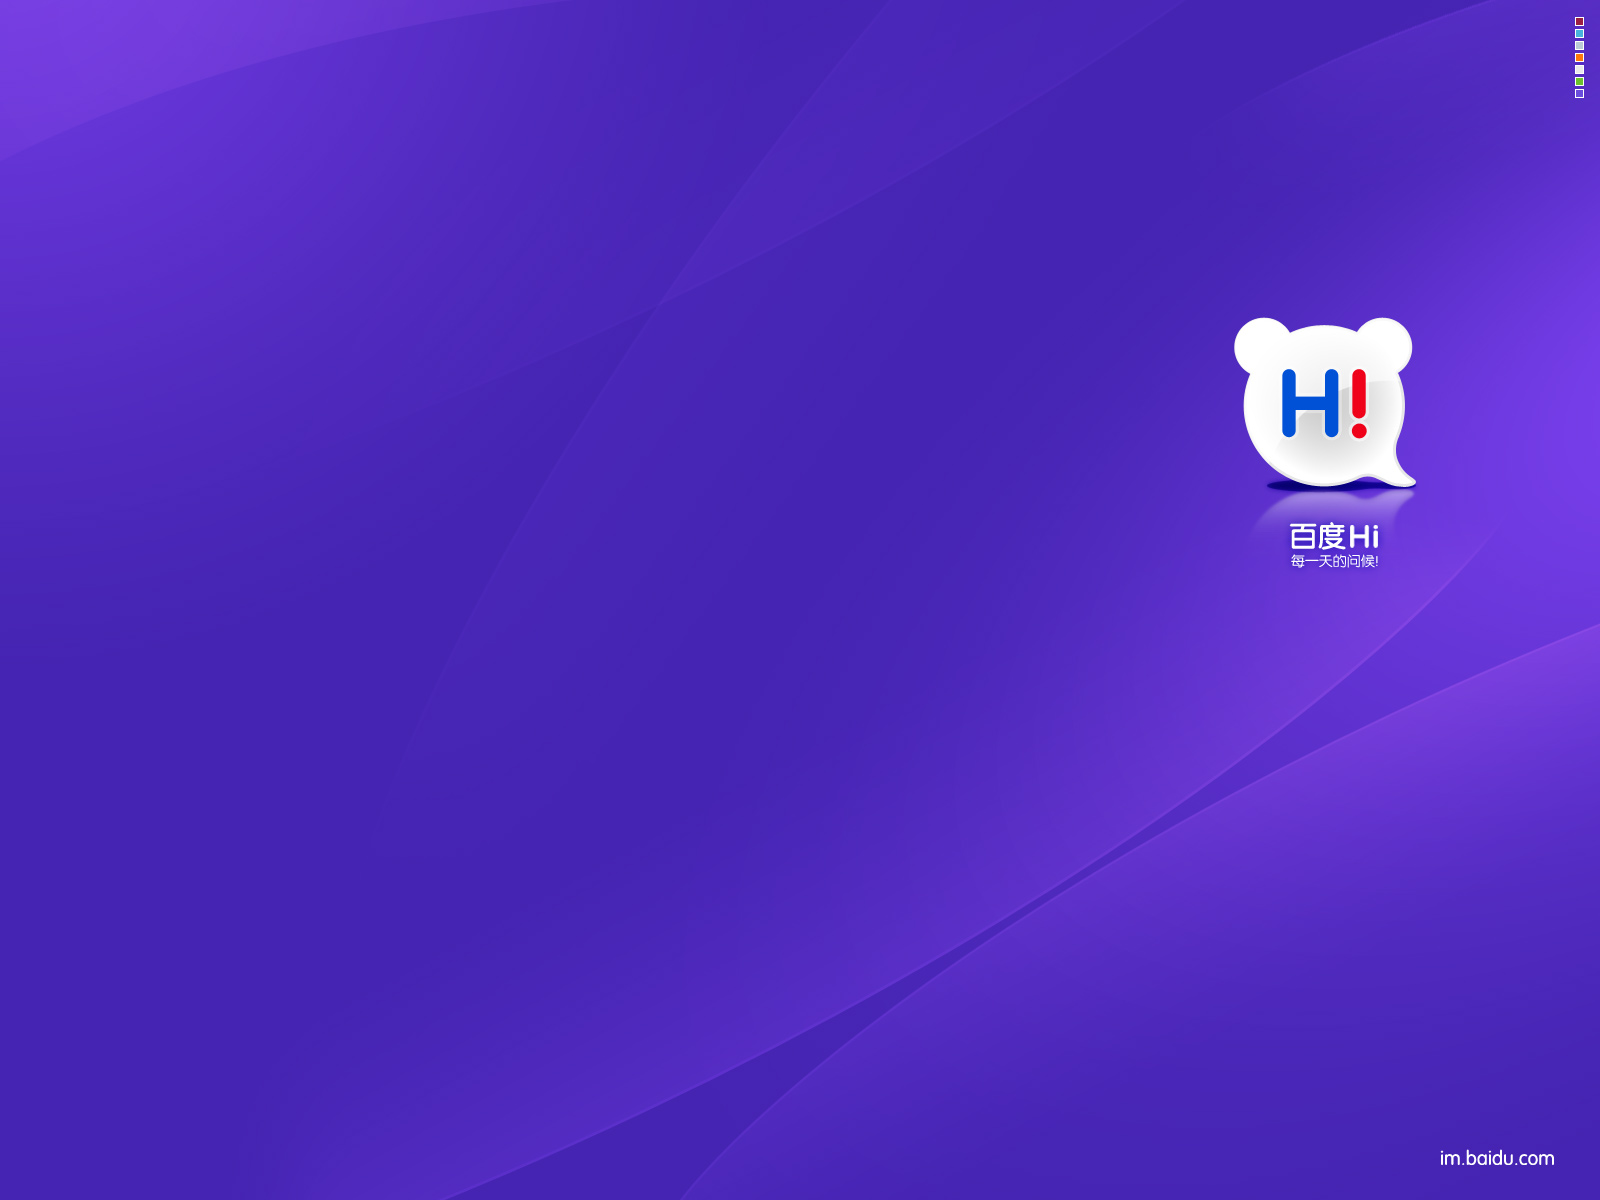 Los mejores fondos de pantalla de Baidu_Hola para la pantalla del teléfono